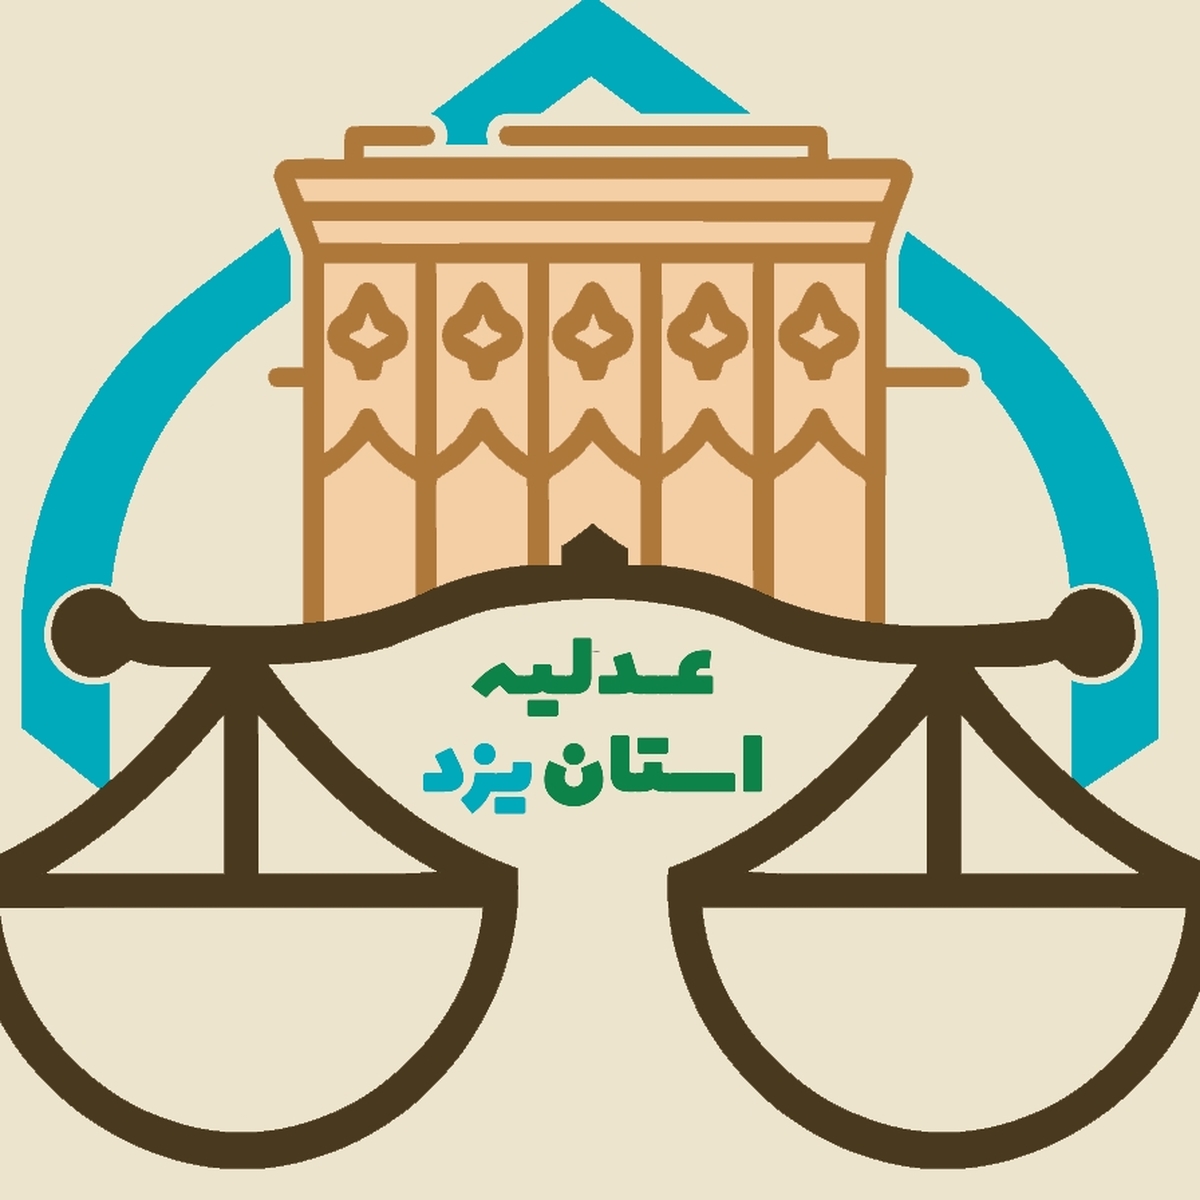 بررسی آسیب های اجتماعی در قالب ۴۰ موضوع در دومین جشنواره عدلیه و رسانه استان یزد